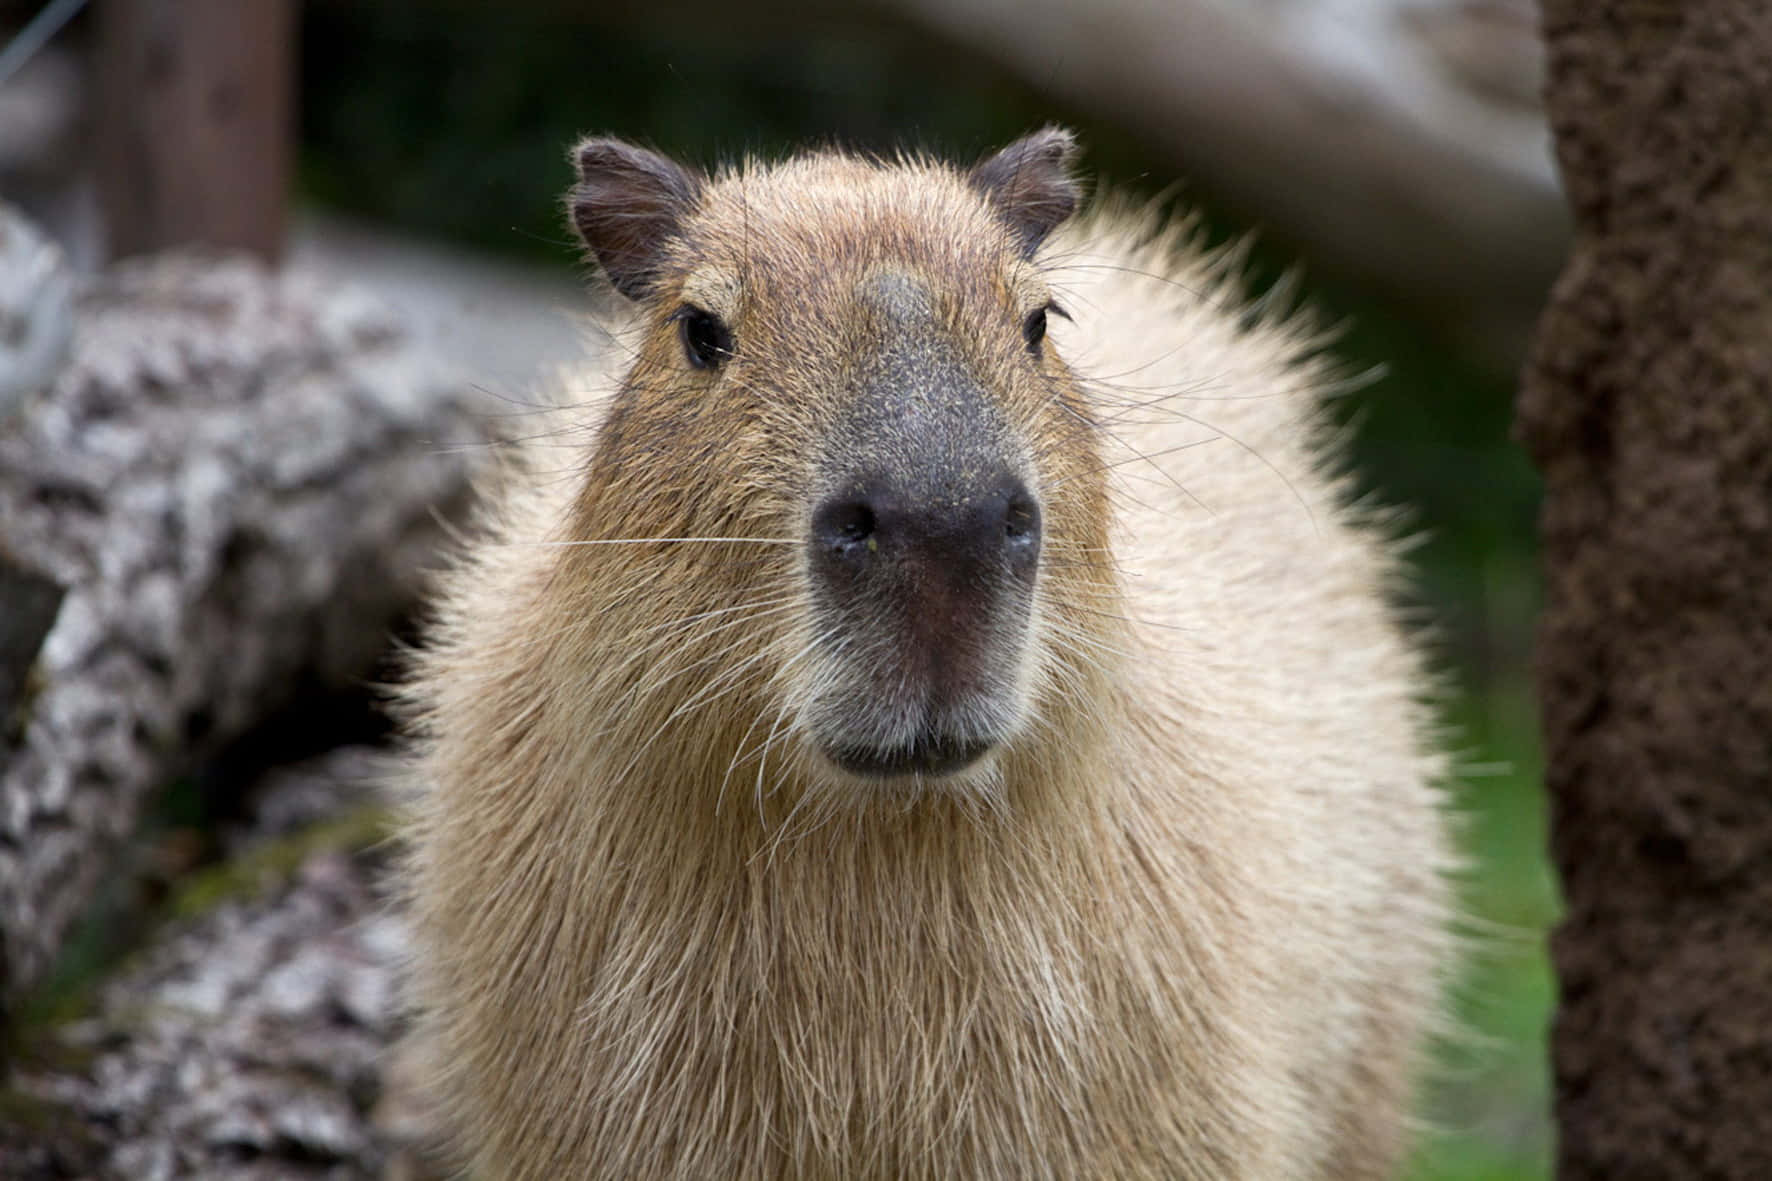 A Close-up shot of a Capybara